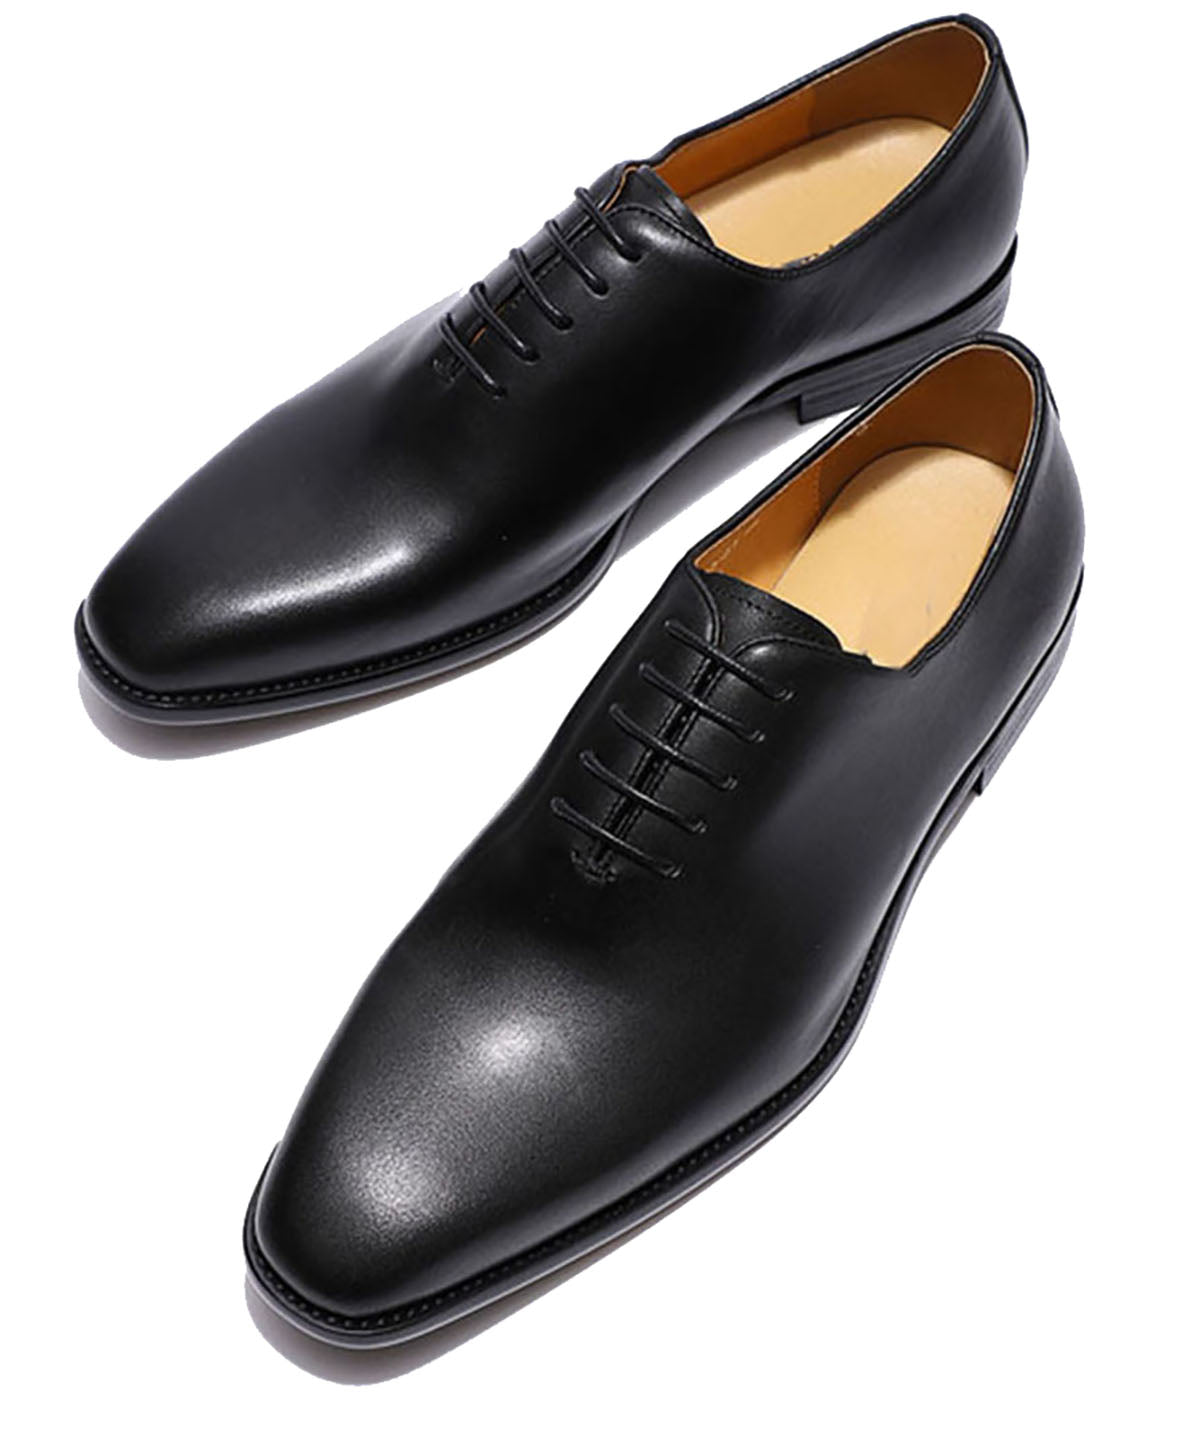 Men's Dress Formal Whole Cut Oxfords Shoes